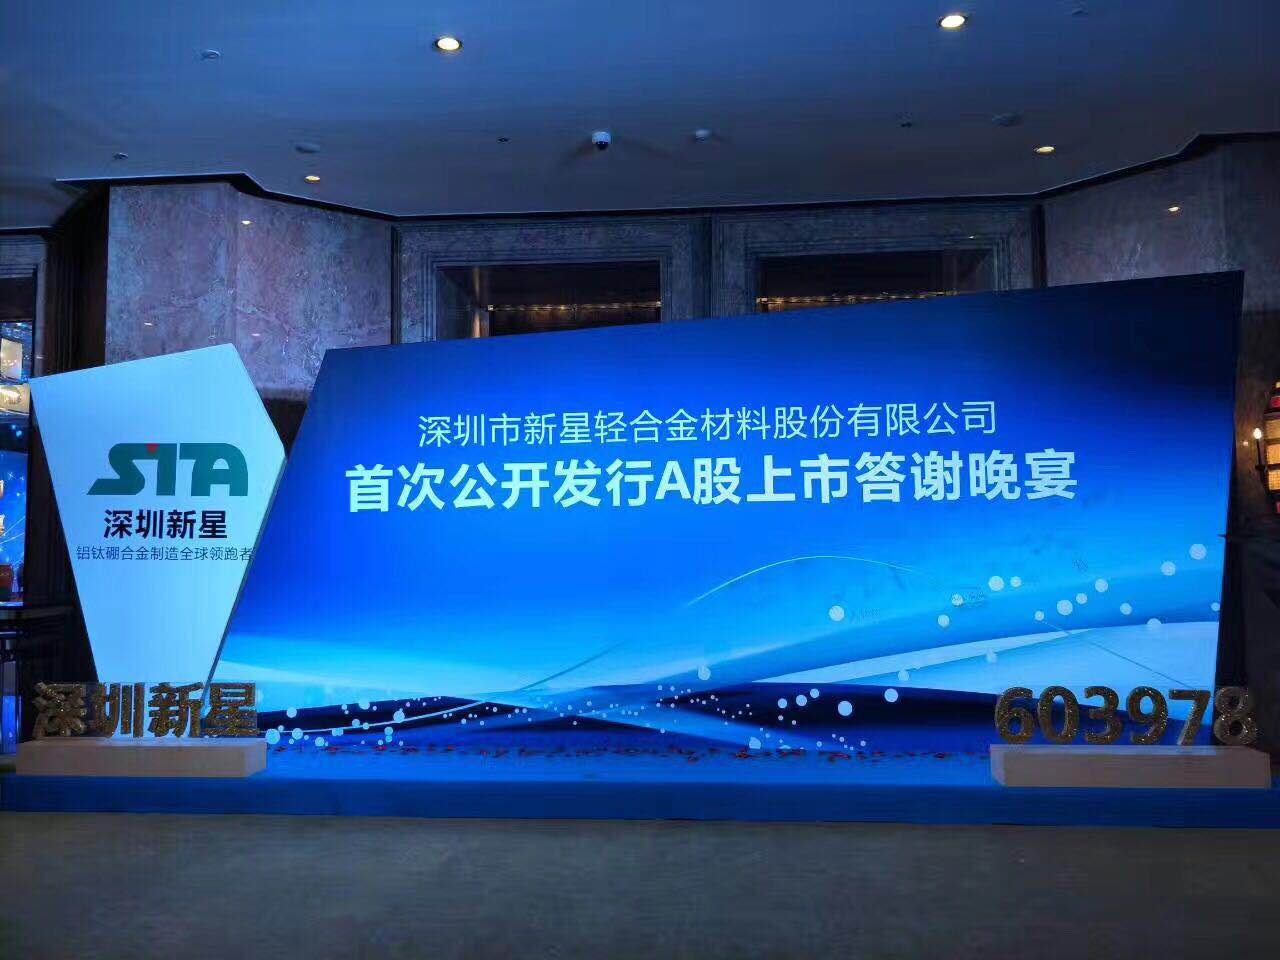 上海黄埔区发布会会议服务策划公司